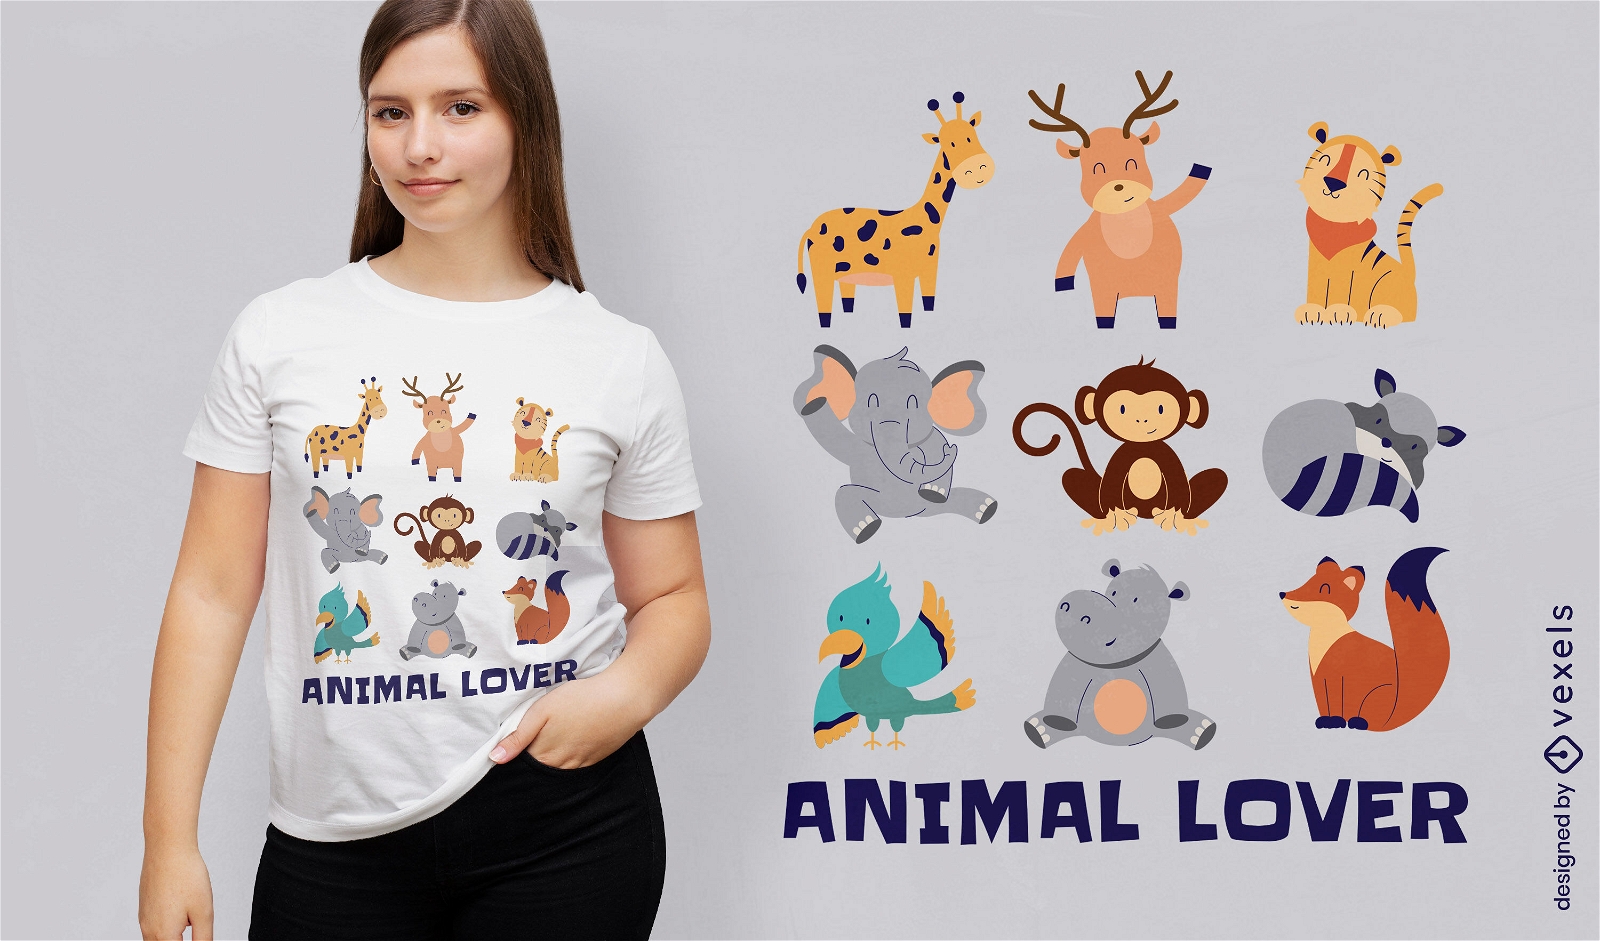 Animal lover t-shirt design